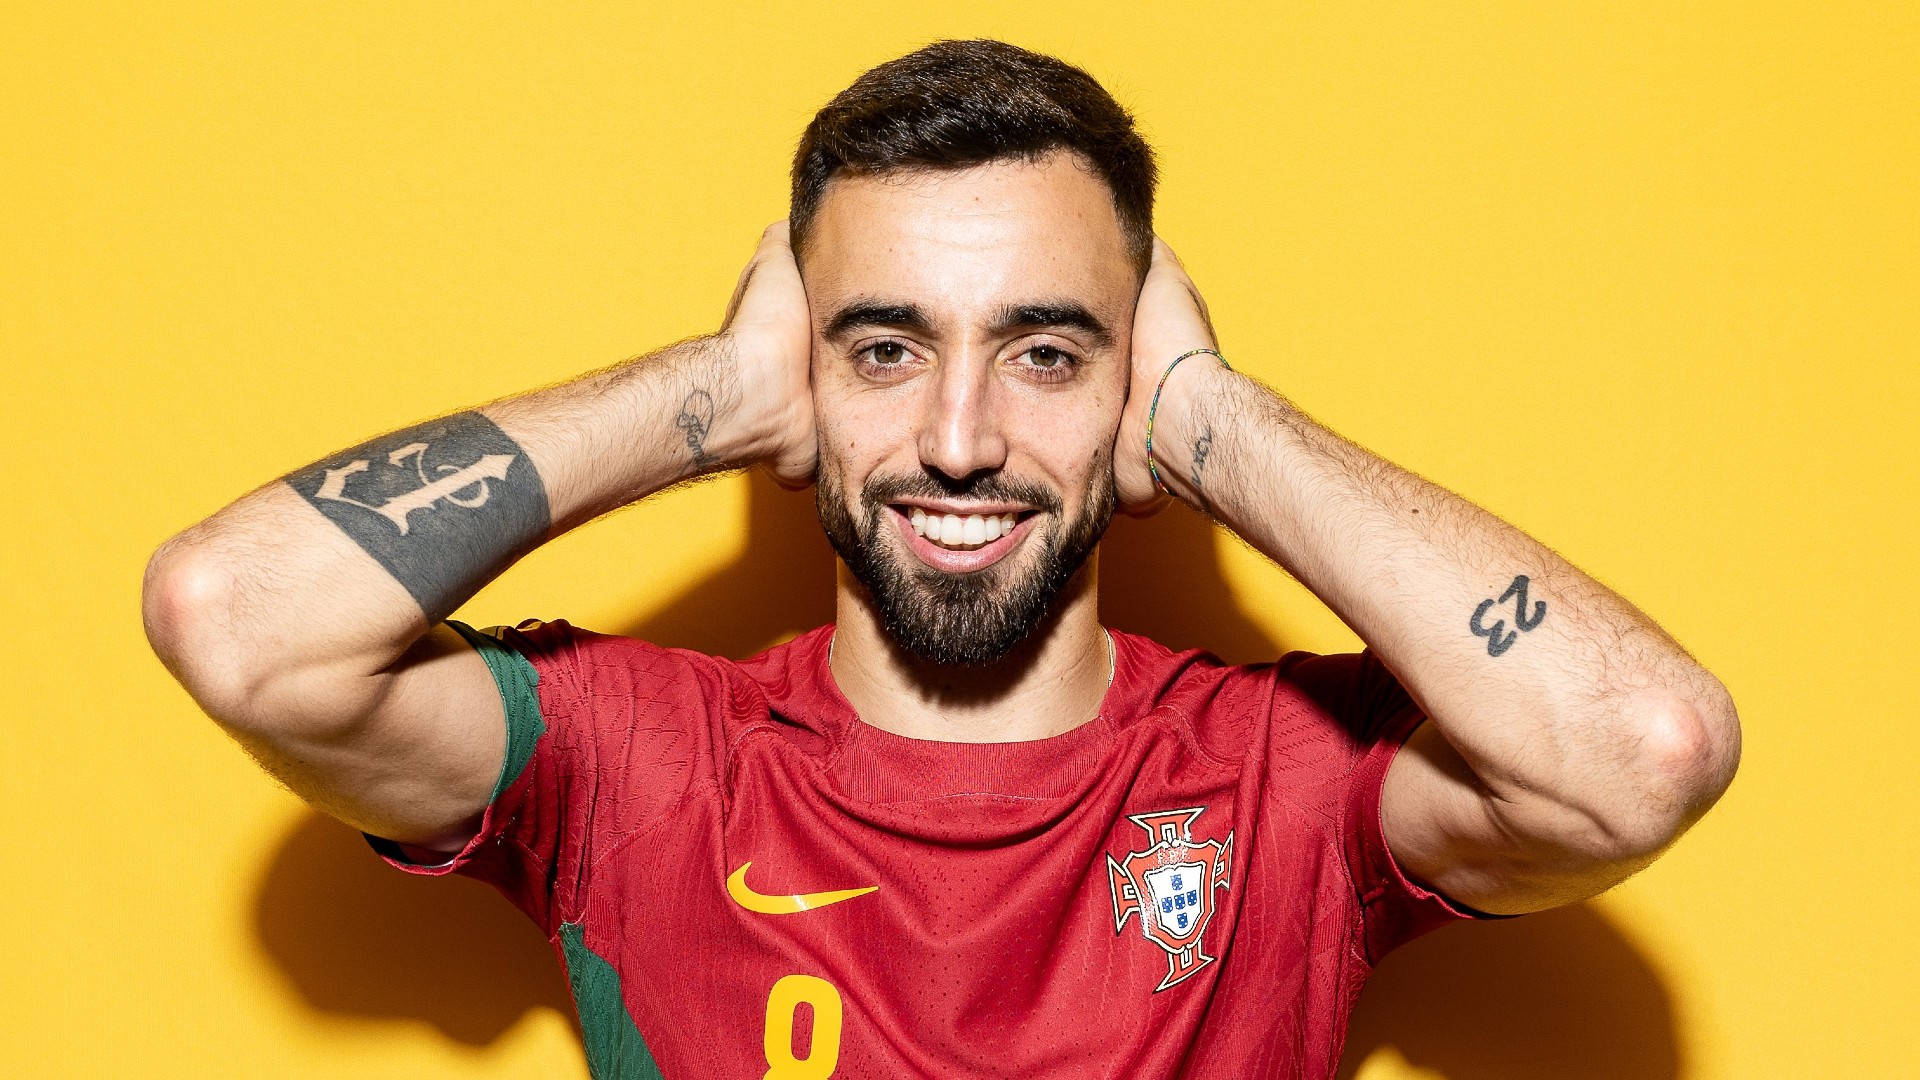 Portugal x Gana: como assistir ao vivo e horário do jogo da Copa